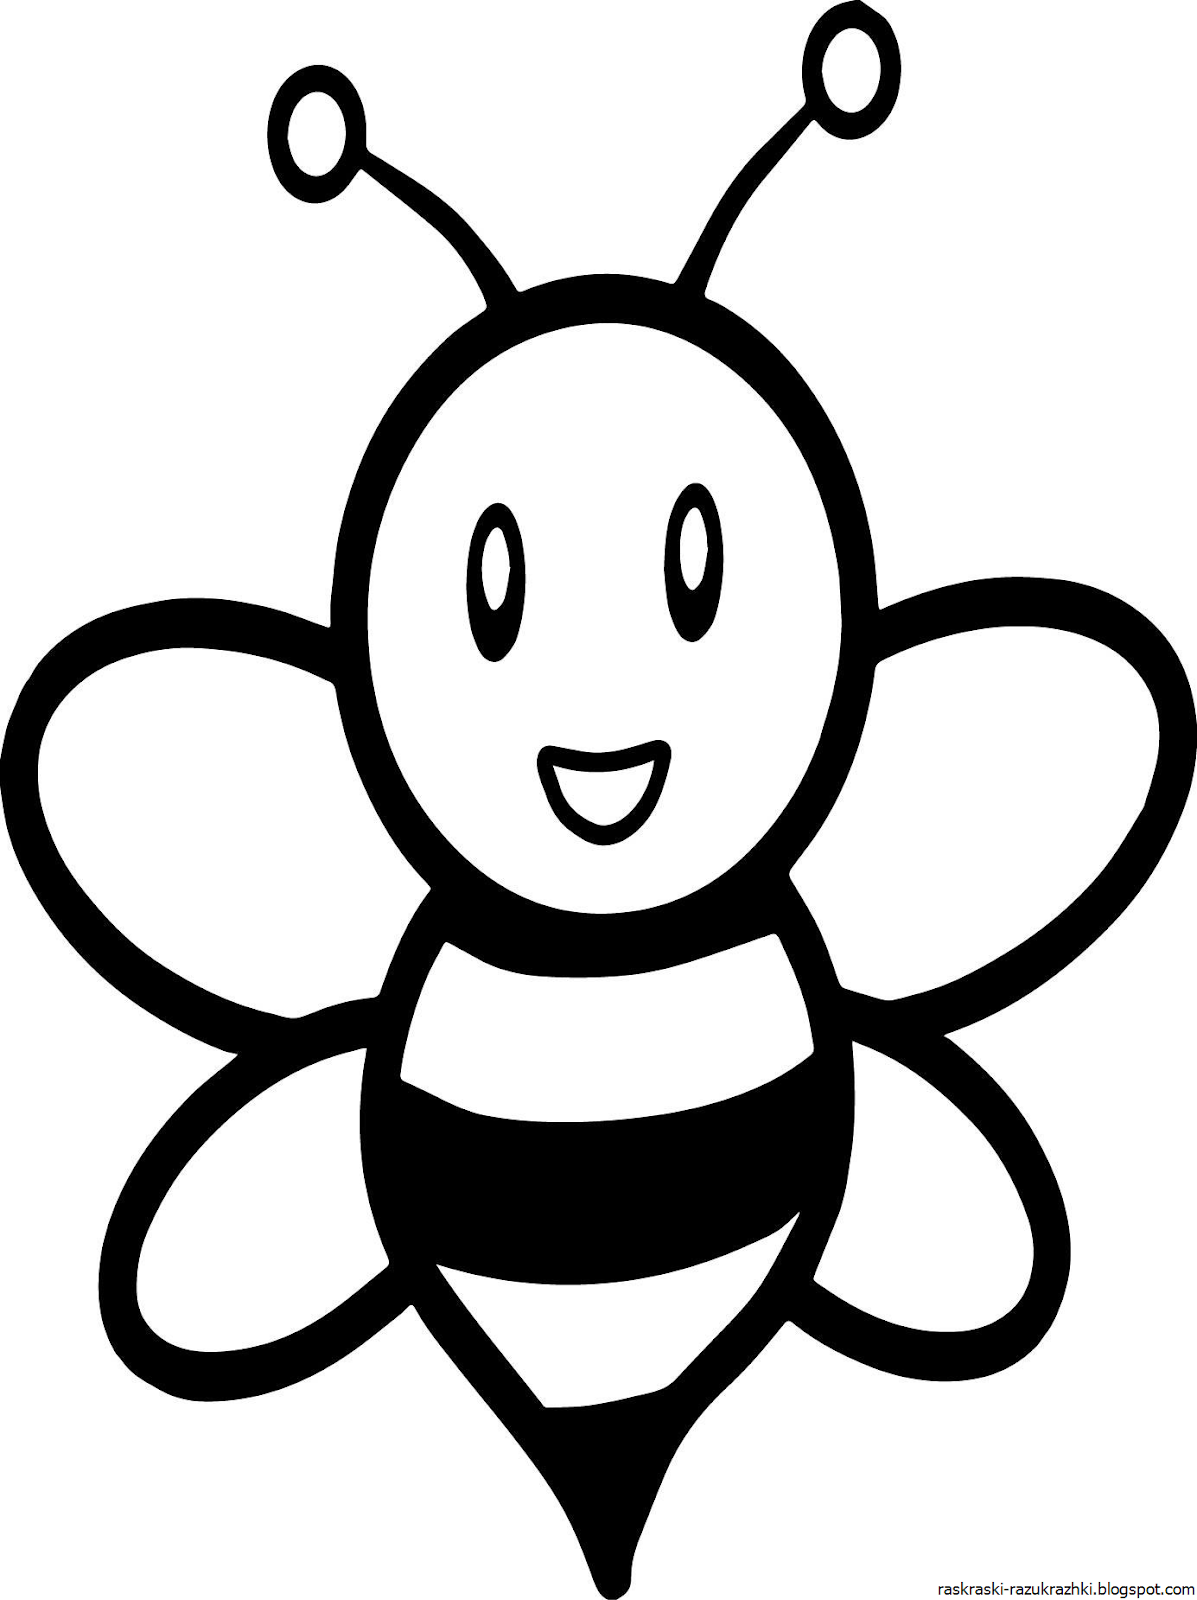 Пчелка раскраска распечатать. Пчелка раскраска. Пчелка раскраска для малышей. Раскраска пчёлка для детей. Пчела раскраска для малышей.